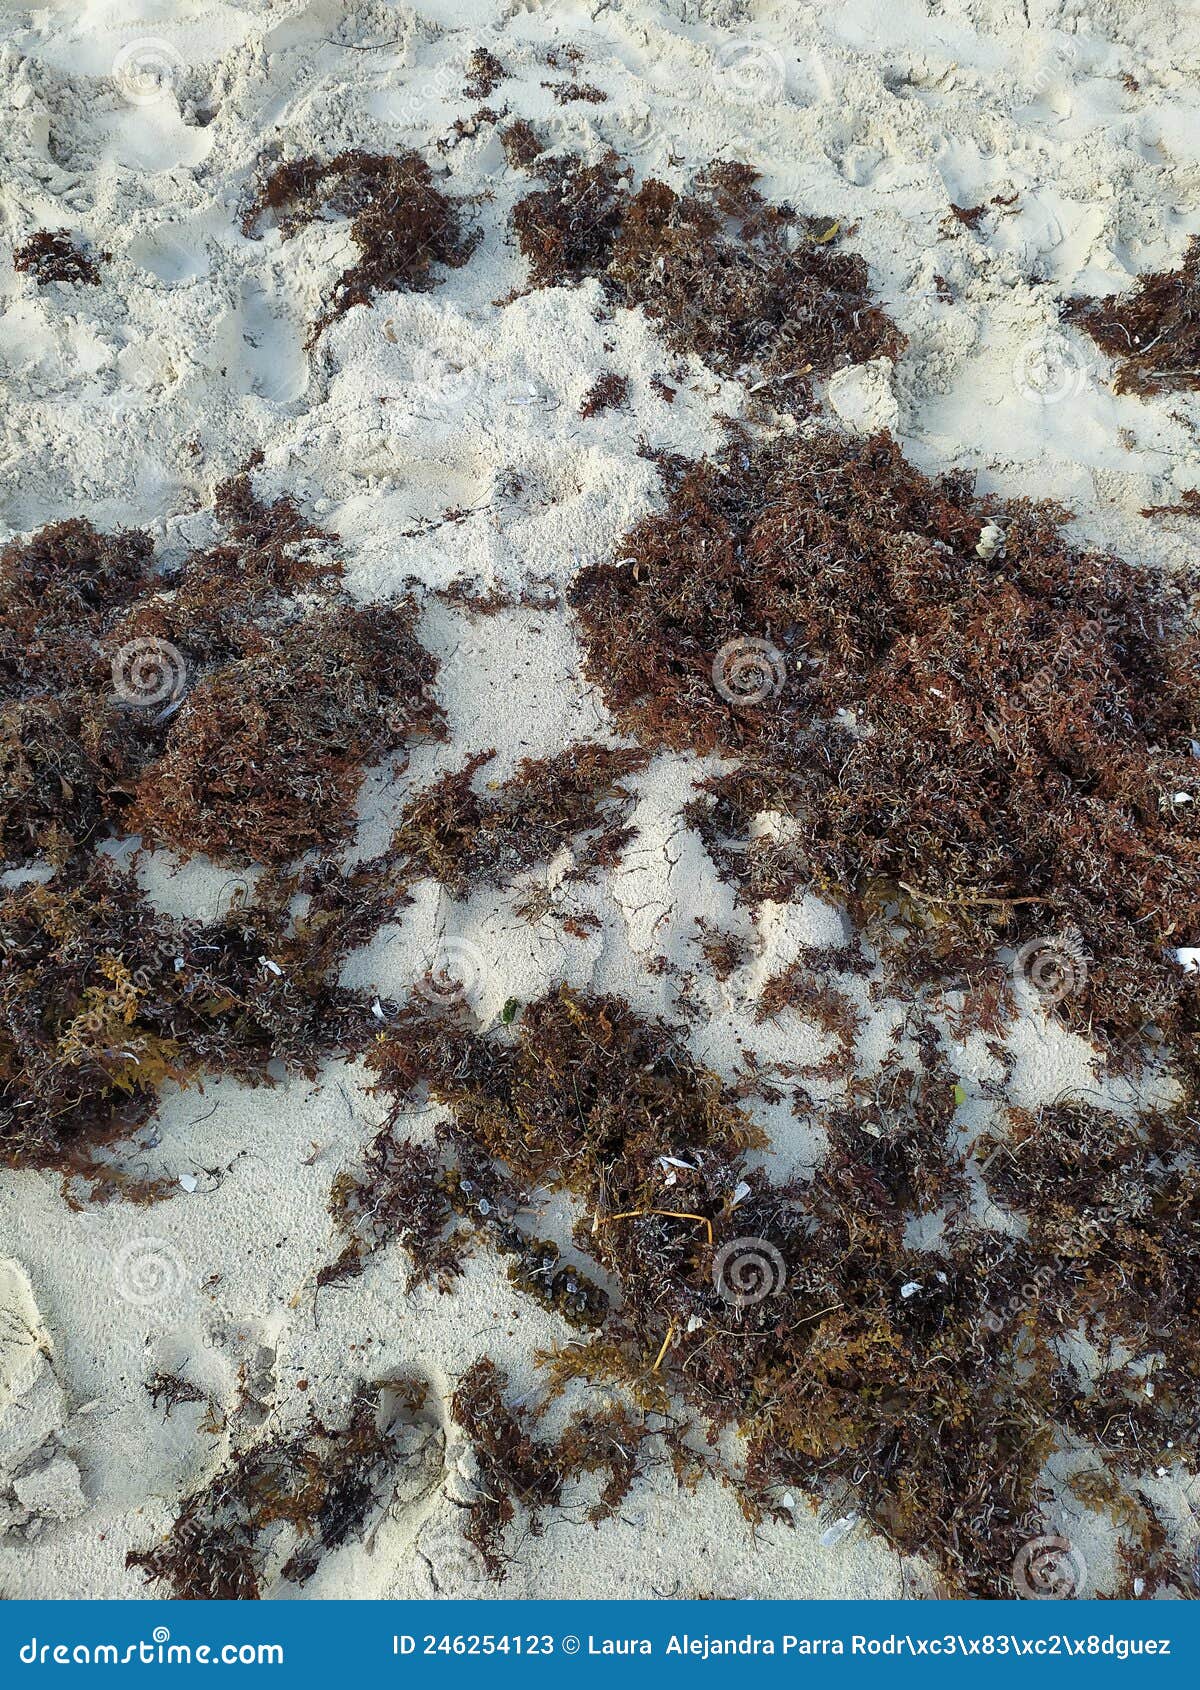 sand texture with seaweed. textura de arena con algas marinas.